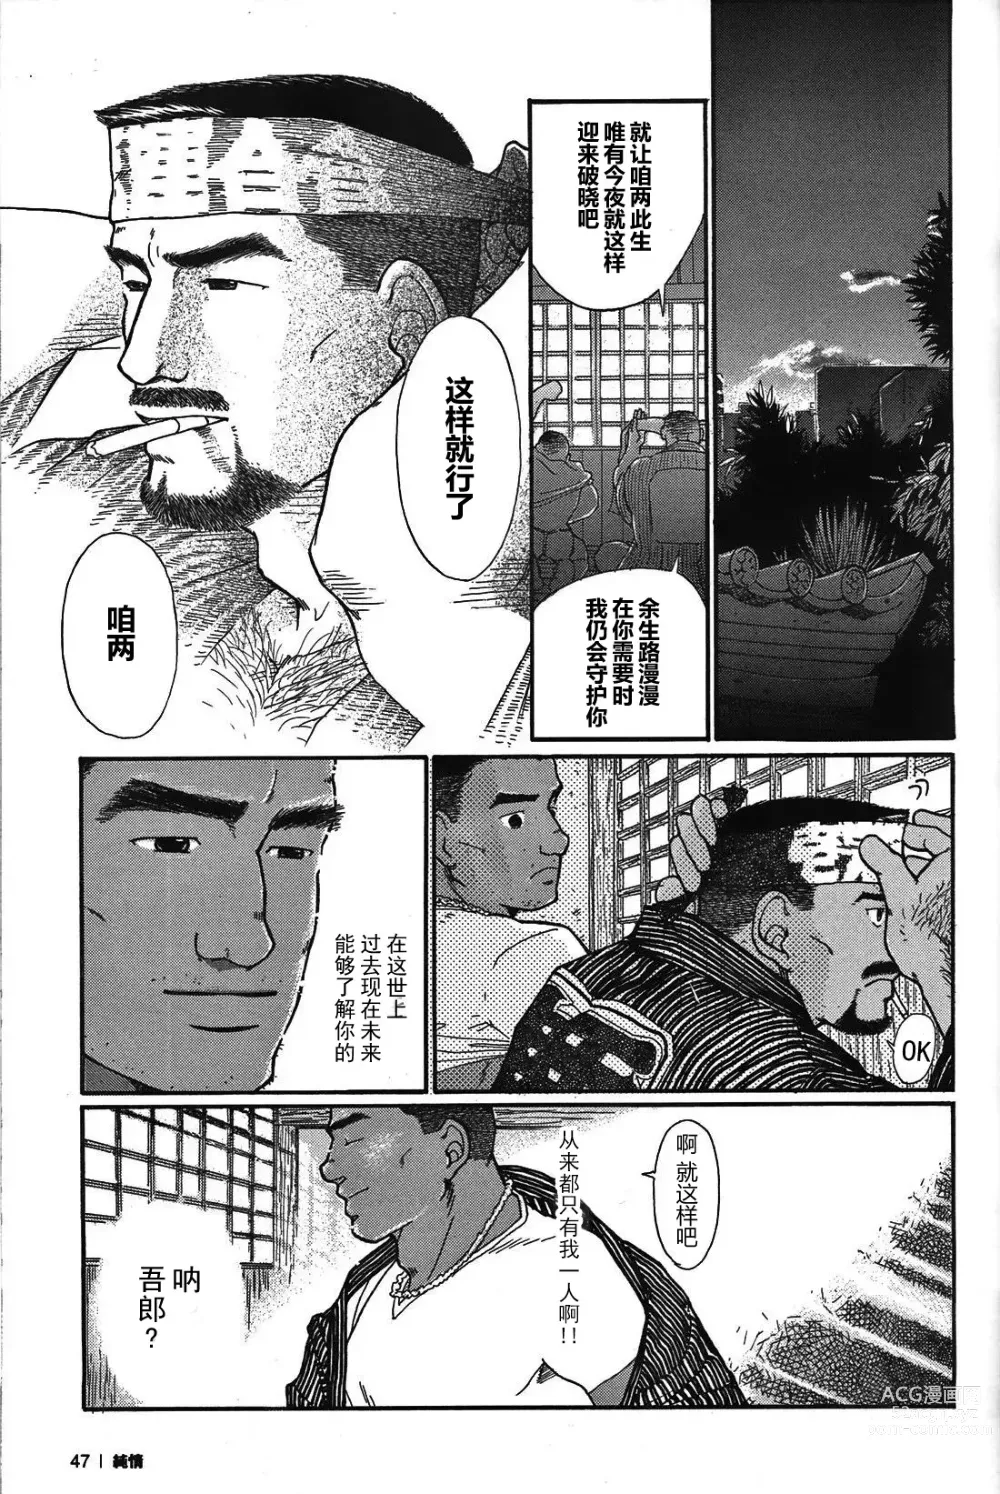 Page 46 of manga 纯情-第一章-纯情!!